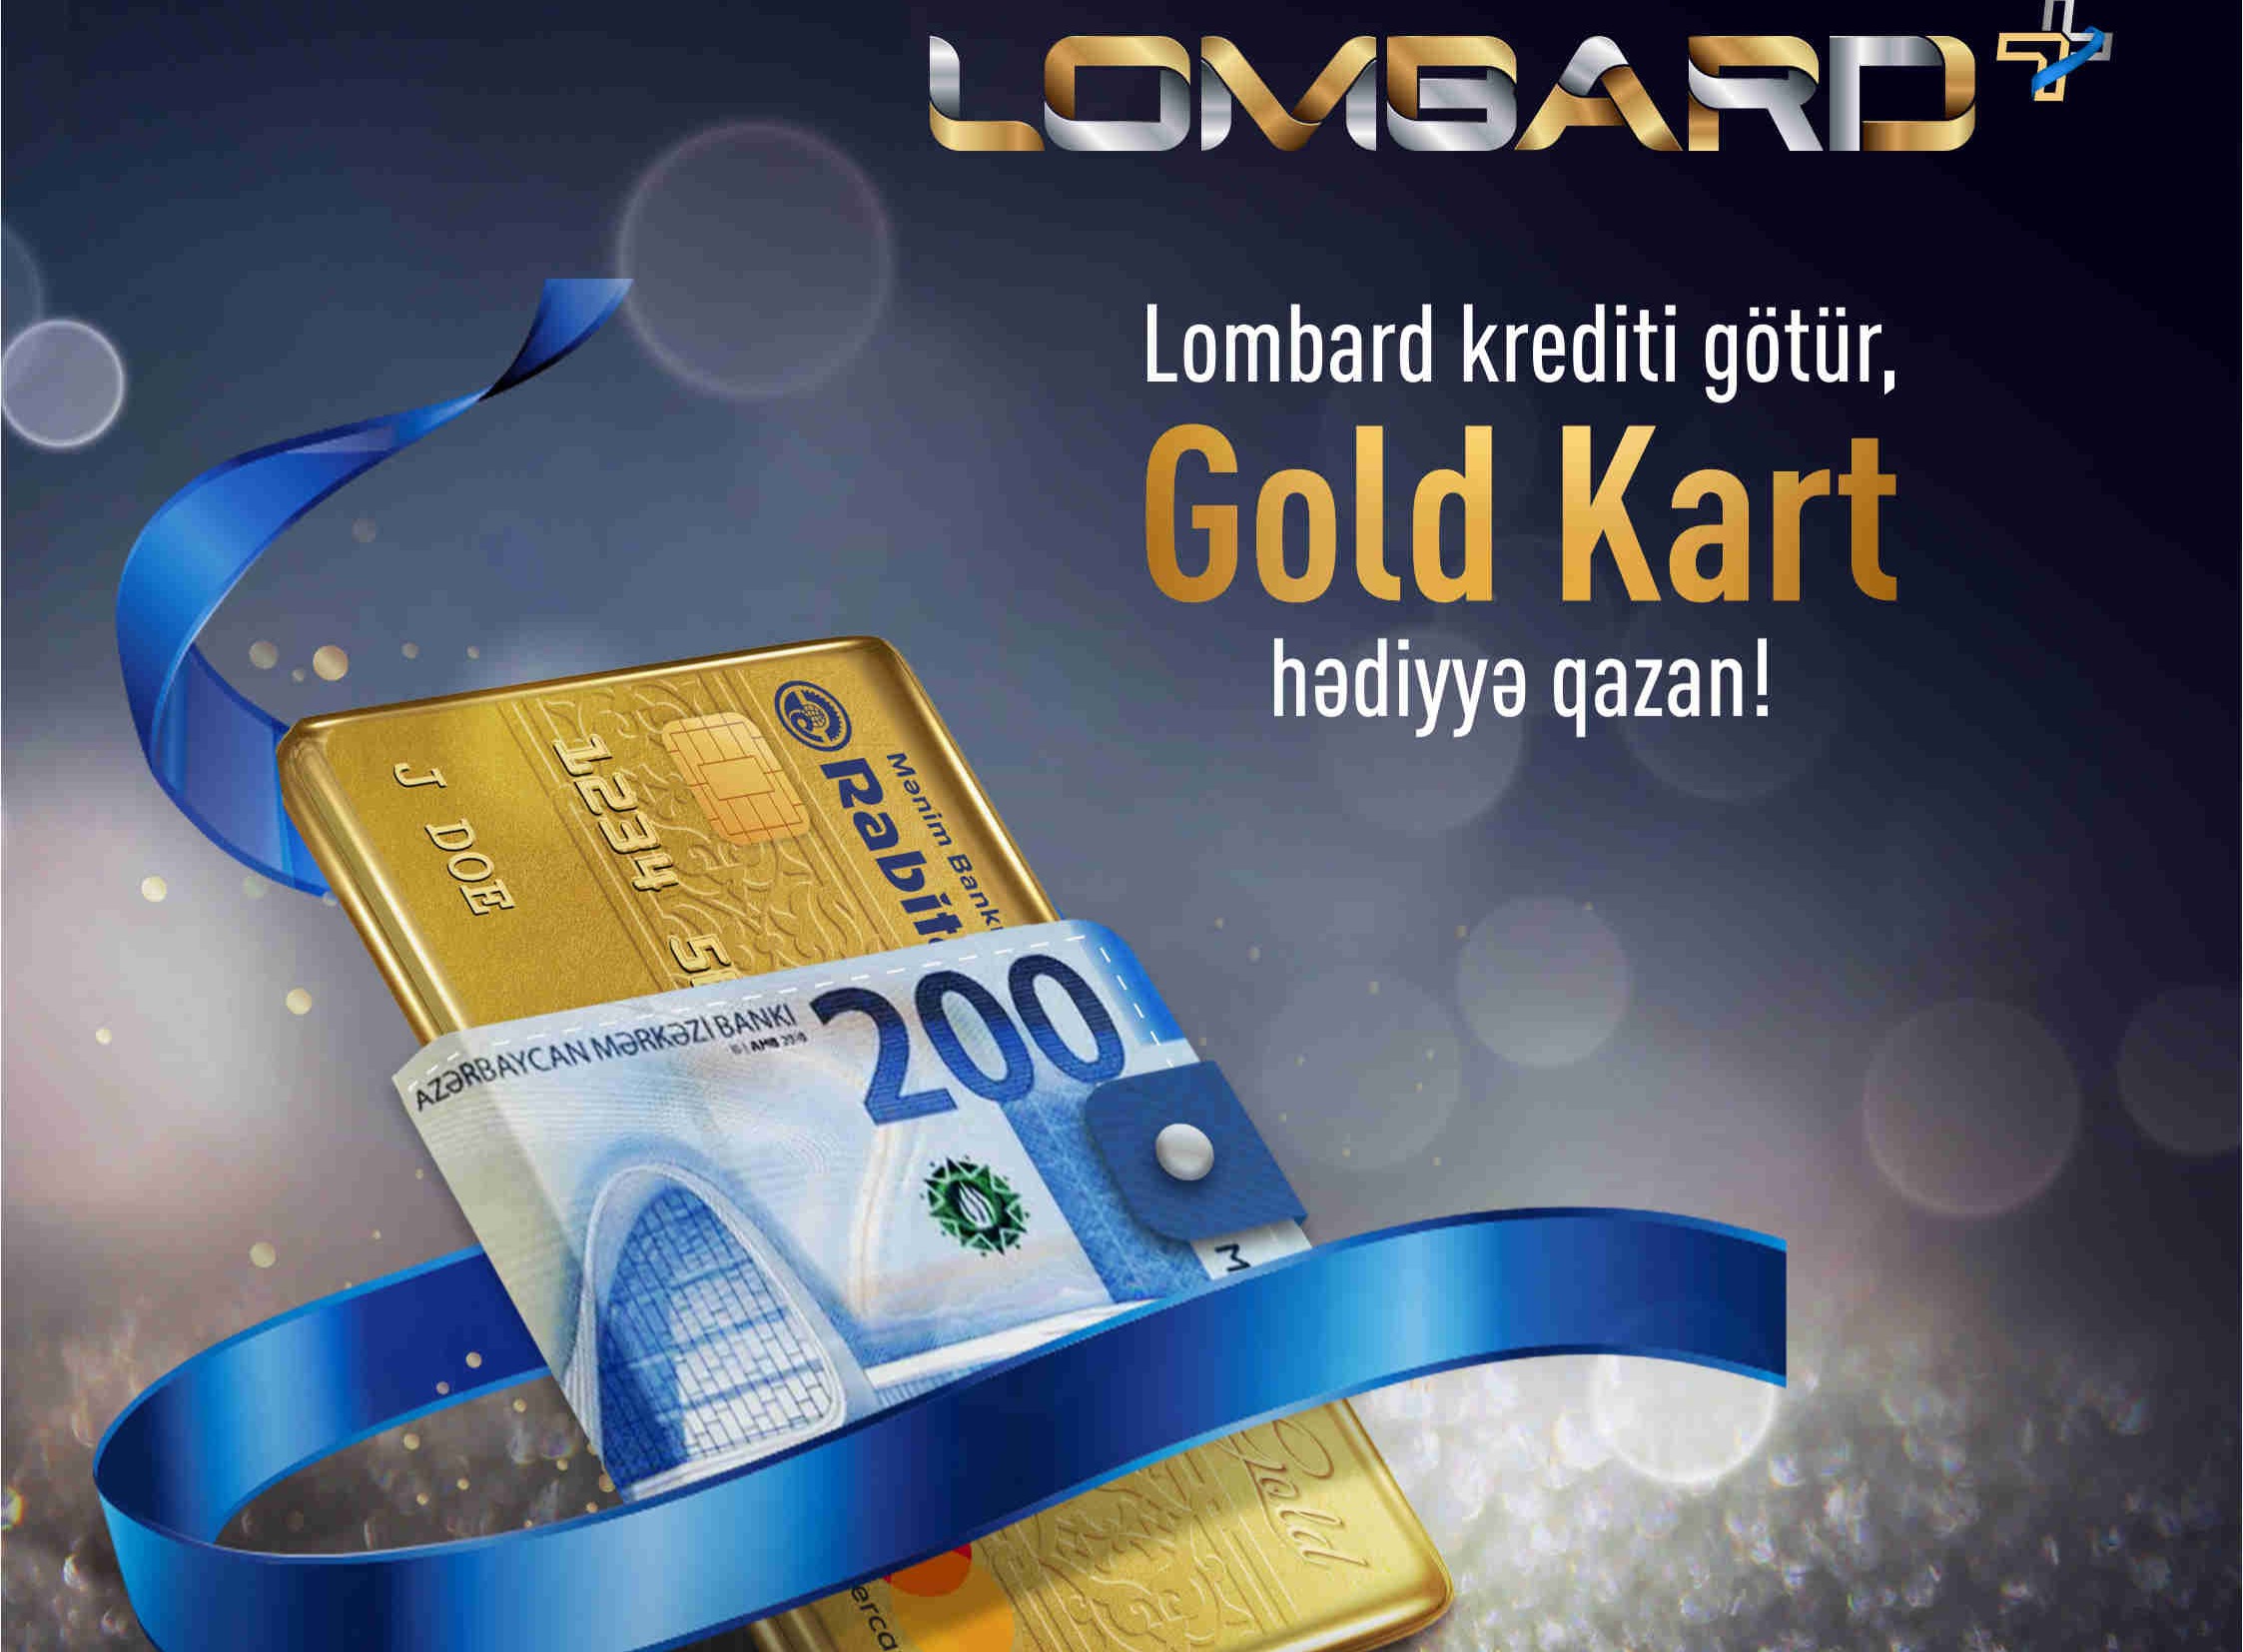 Rabitəbankdan Lombard krediti al  â€“ Gold Kart qazan!